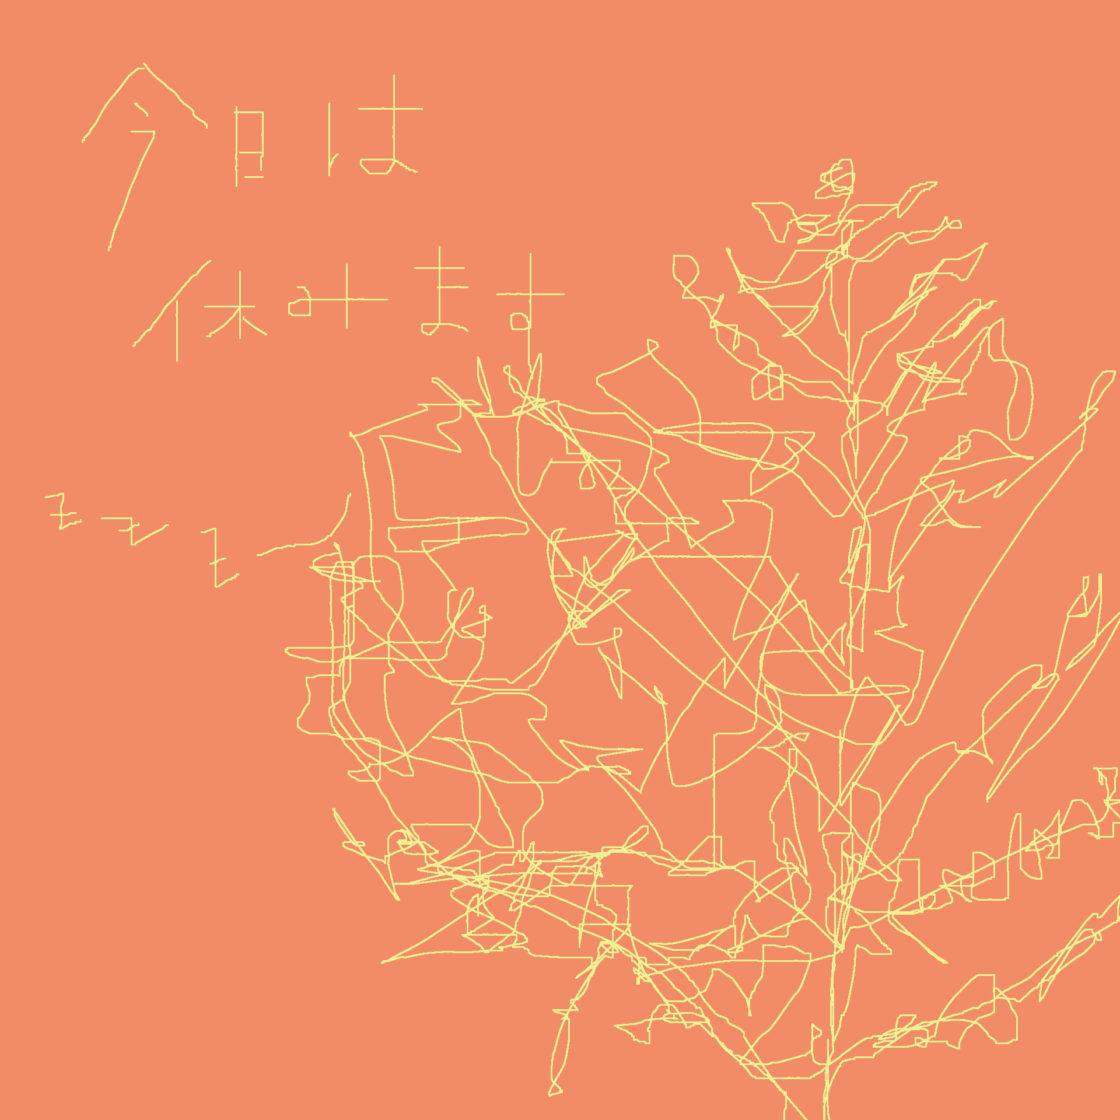 baumartige Zeichnung auf orangene Hintergrund mit japanische Schriftzeichen, 今日は休みます, und zzz